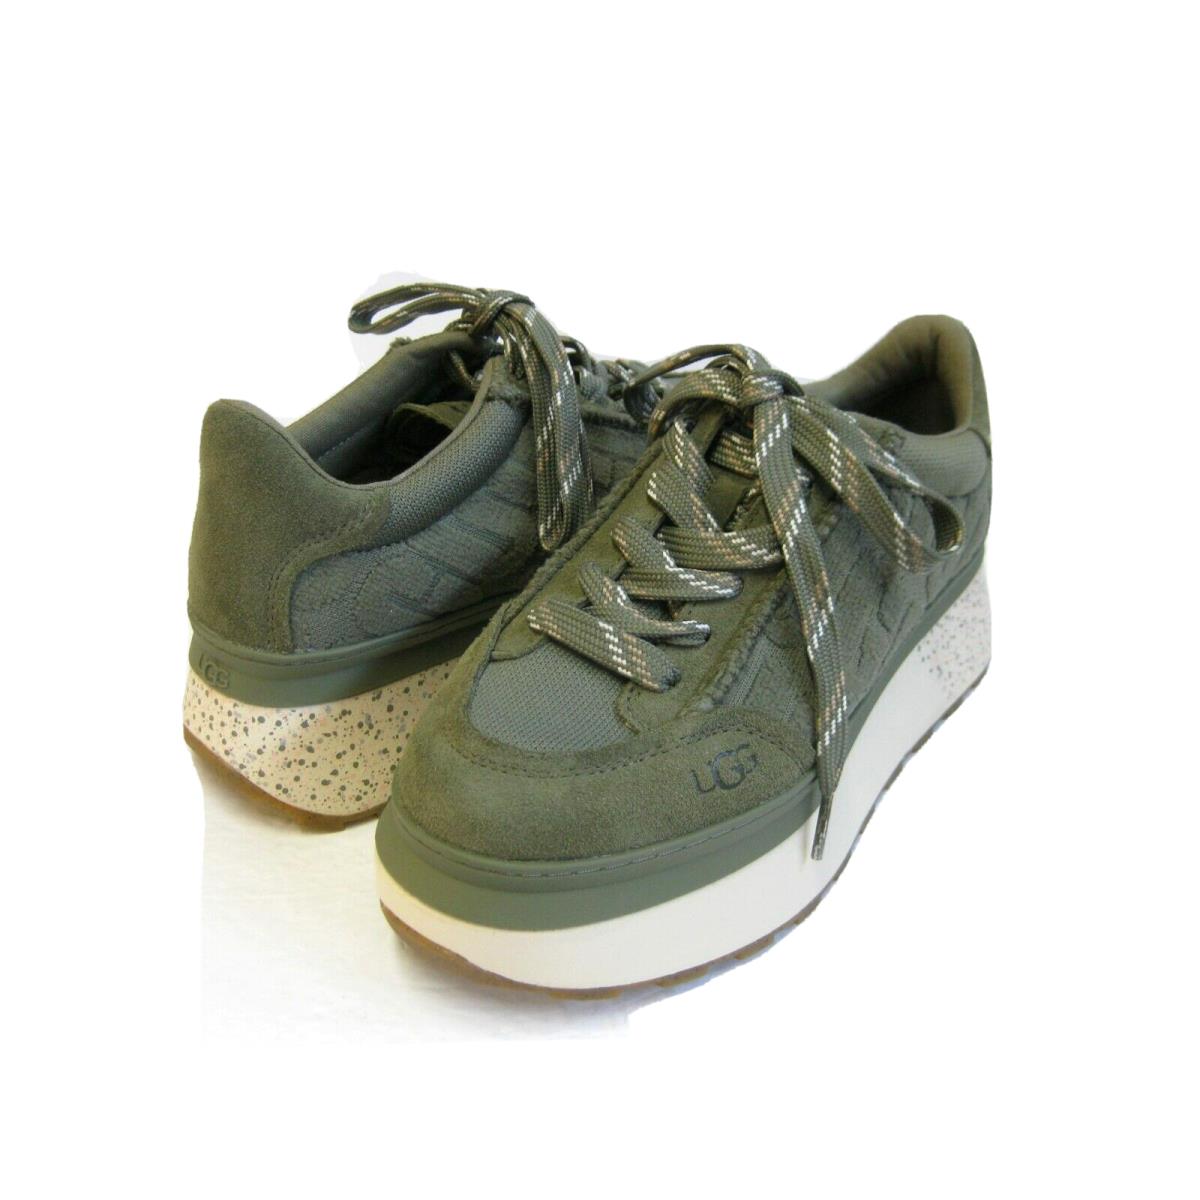 Ugg Marin Lace Logo Women Shoes Burnt Olive US 9.5 /uk 7.5 /eu 40.5 - Burnt Olive